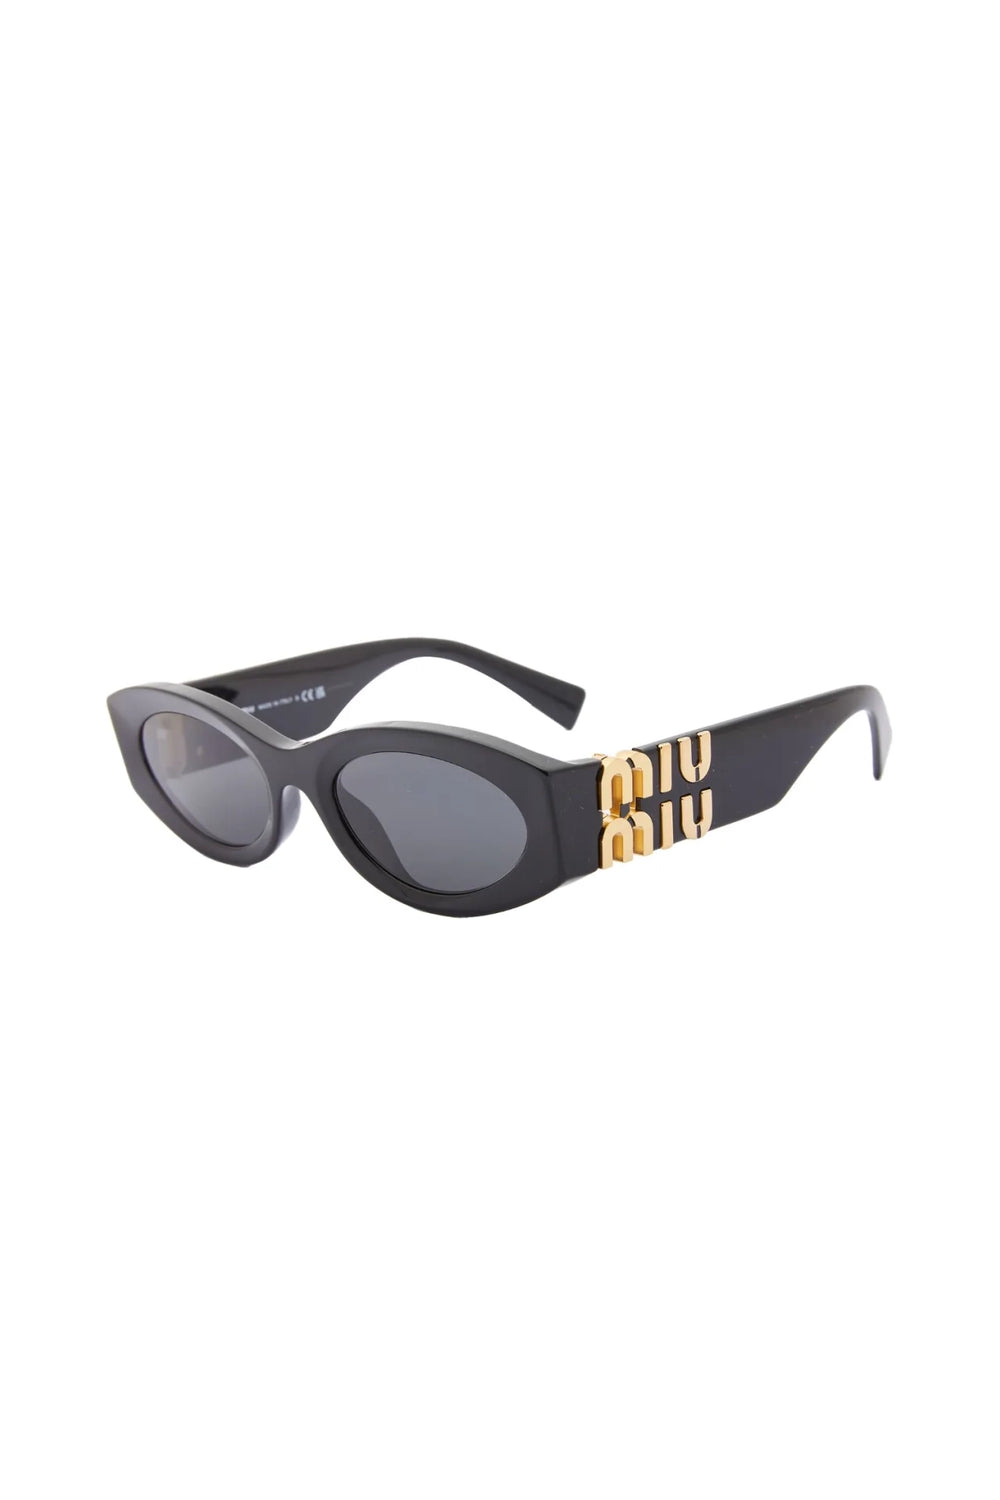 Miu Miu Oval Sunglasses Black 0MU 11WS